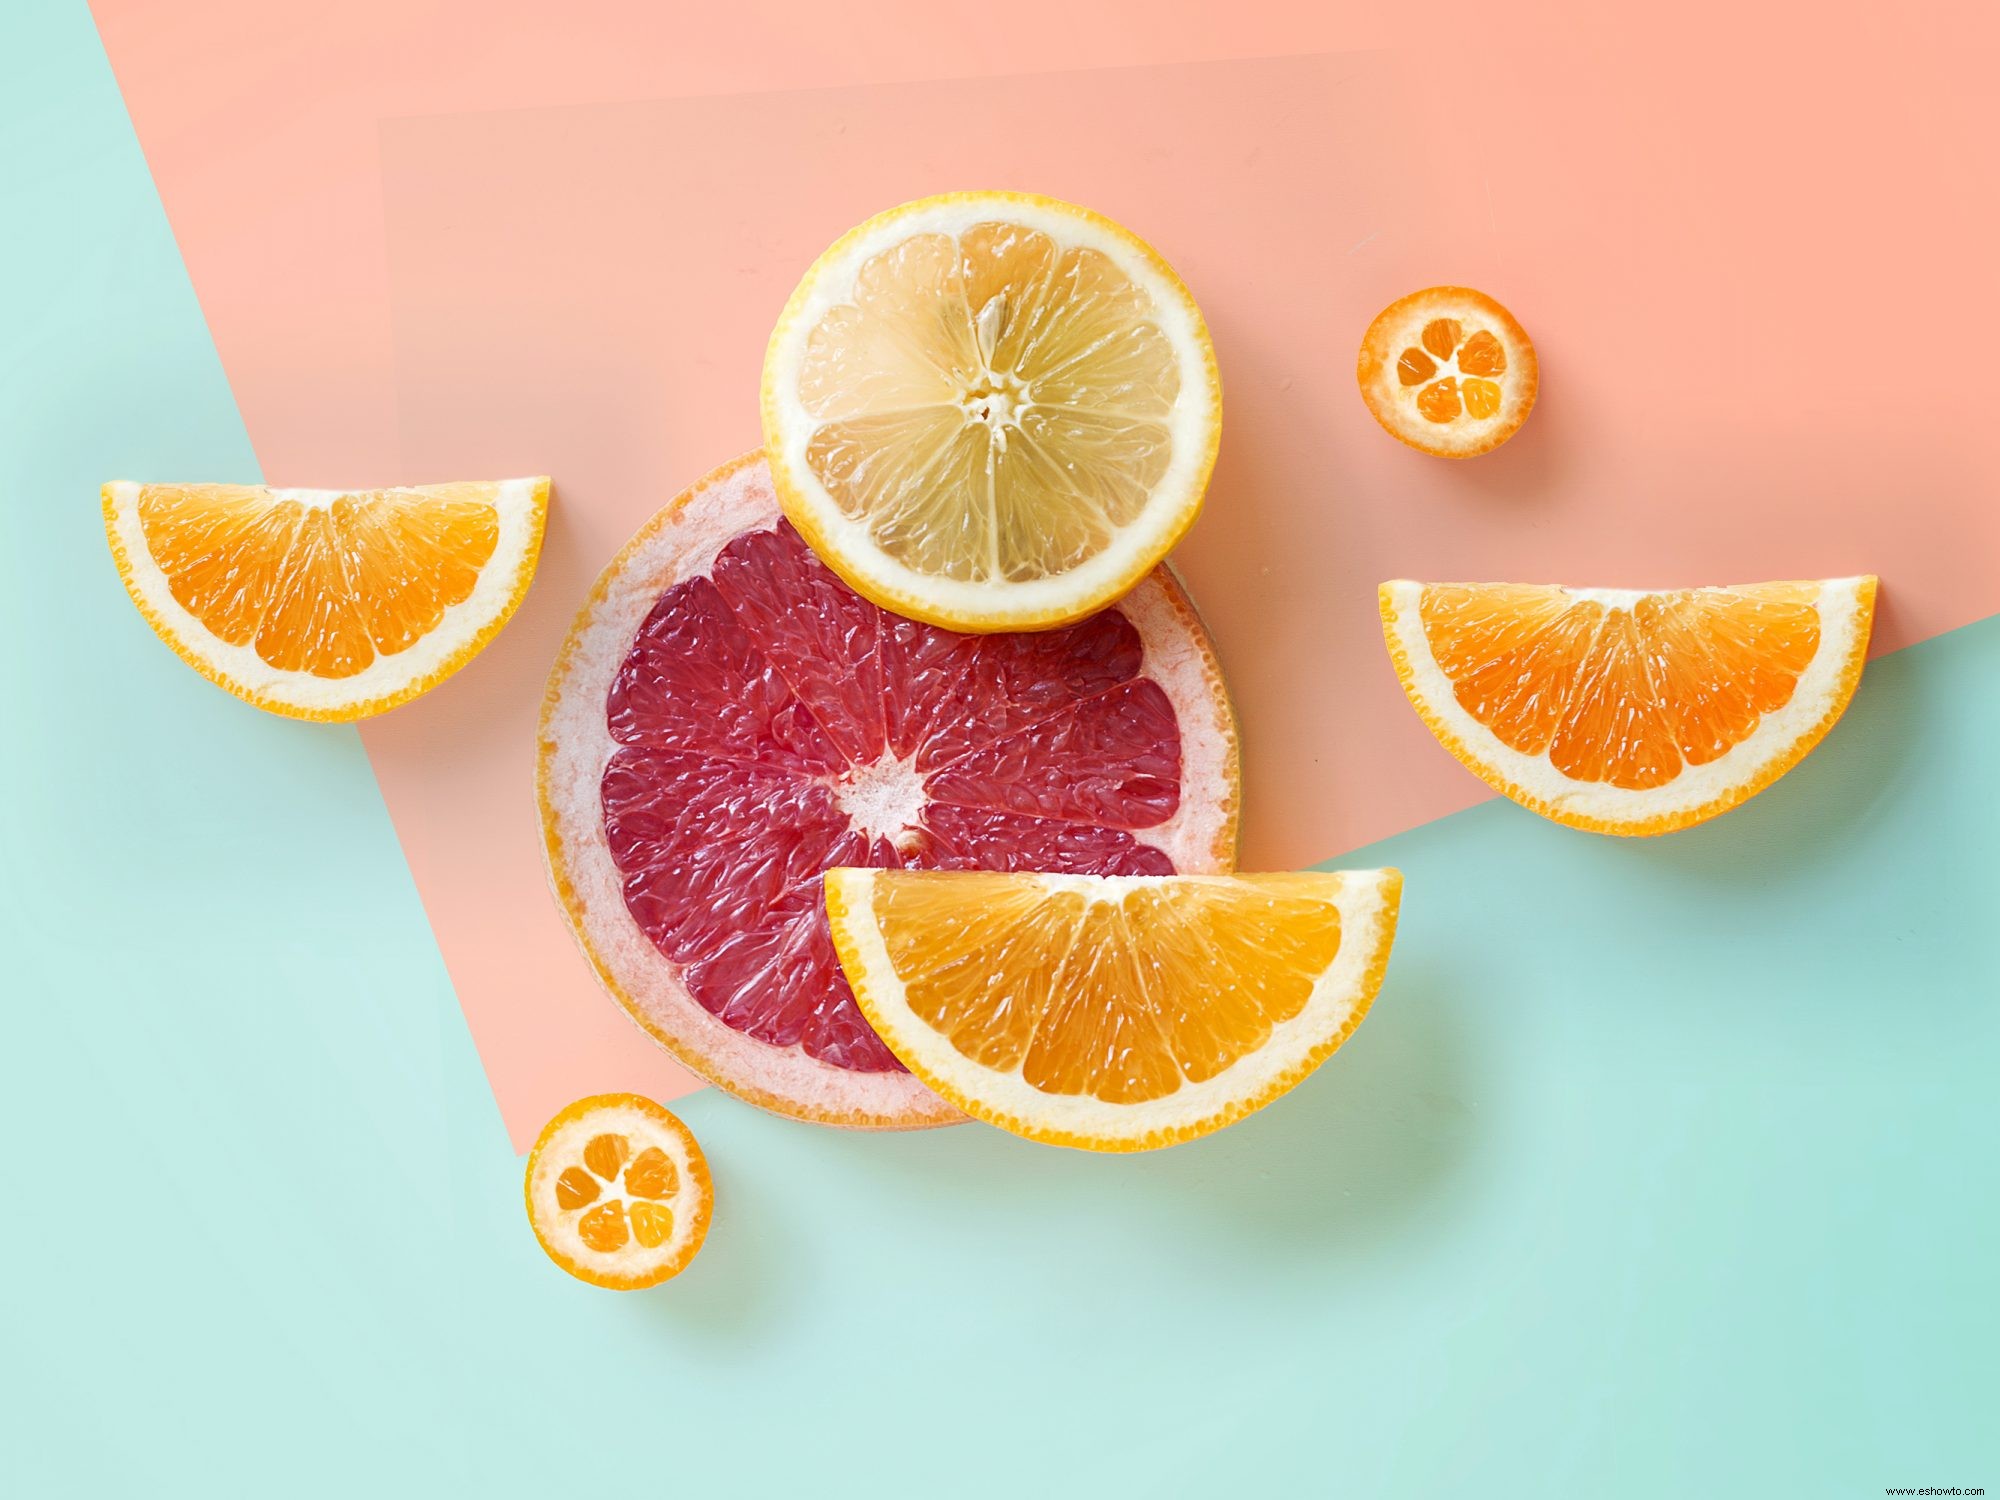 ¿Cansado de naranjas? La toronja también está llena de vitamina C (y muchos más beneficios saludables) 